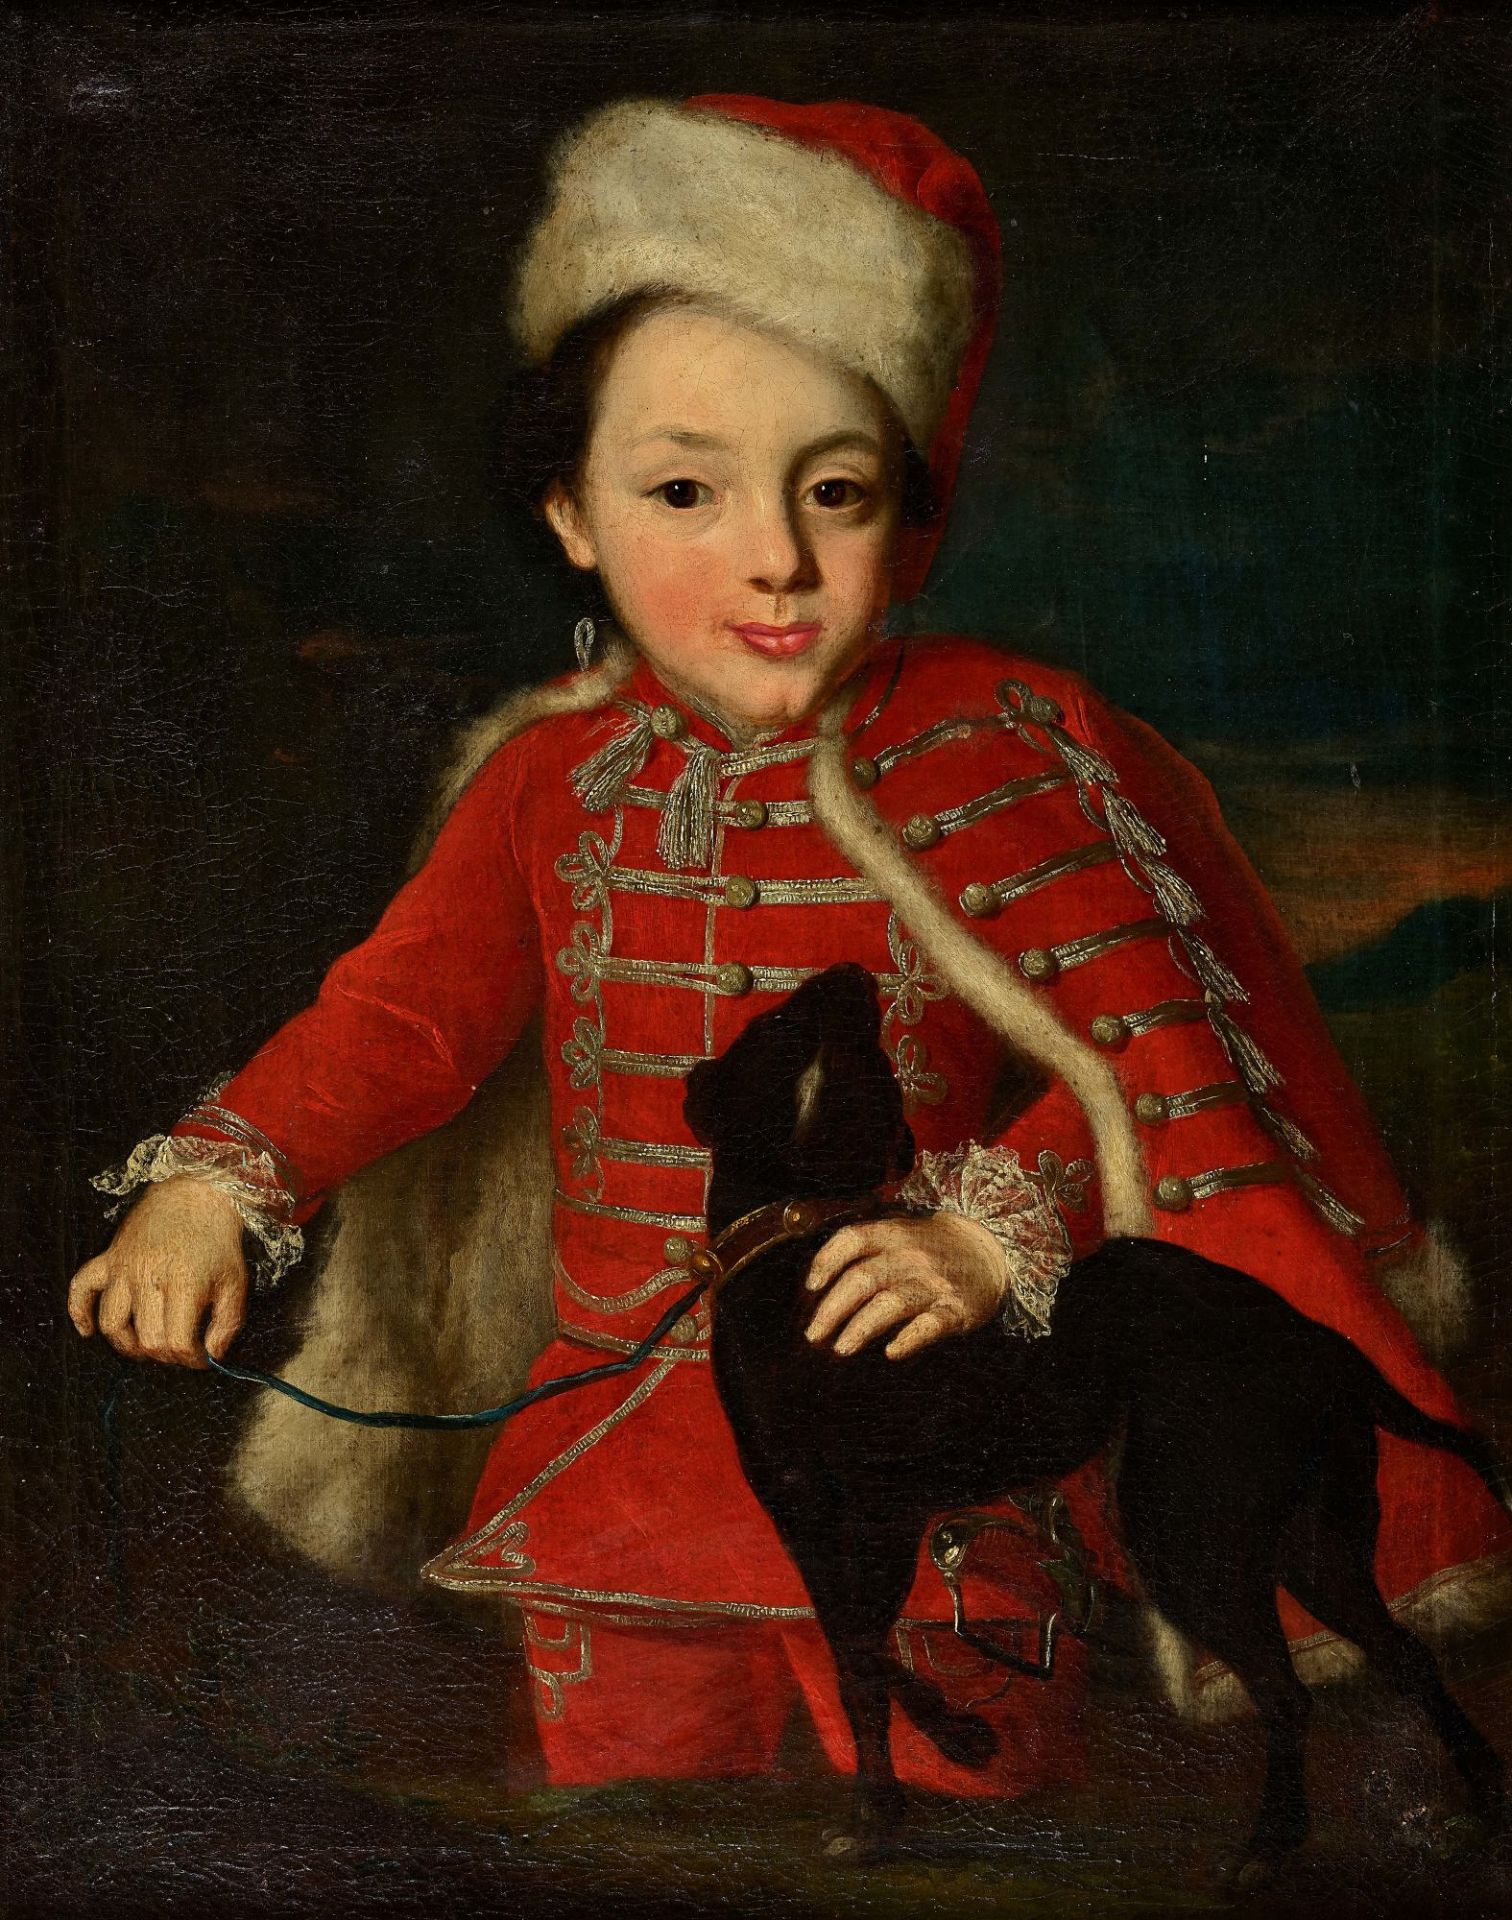 DAELLIKER, JOHANN RUDOLF: Porträt eines vornehmen Knaben mit Hund.